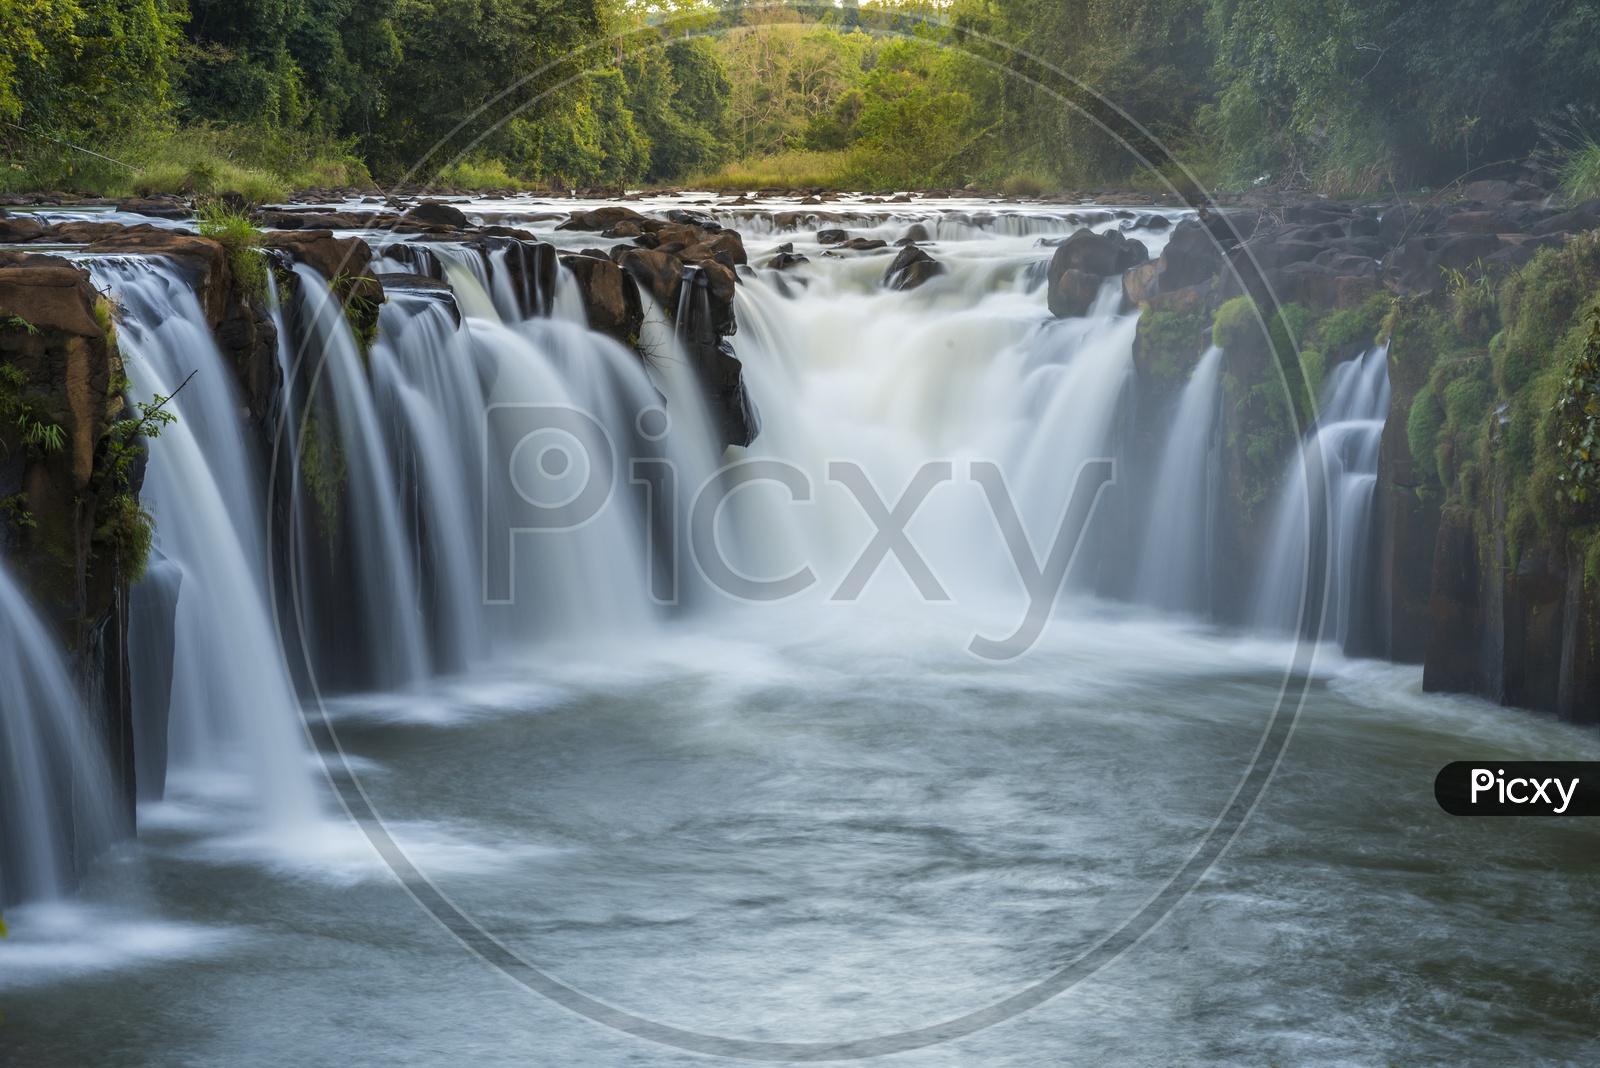 Beautiful waterfall in Laos